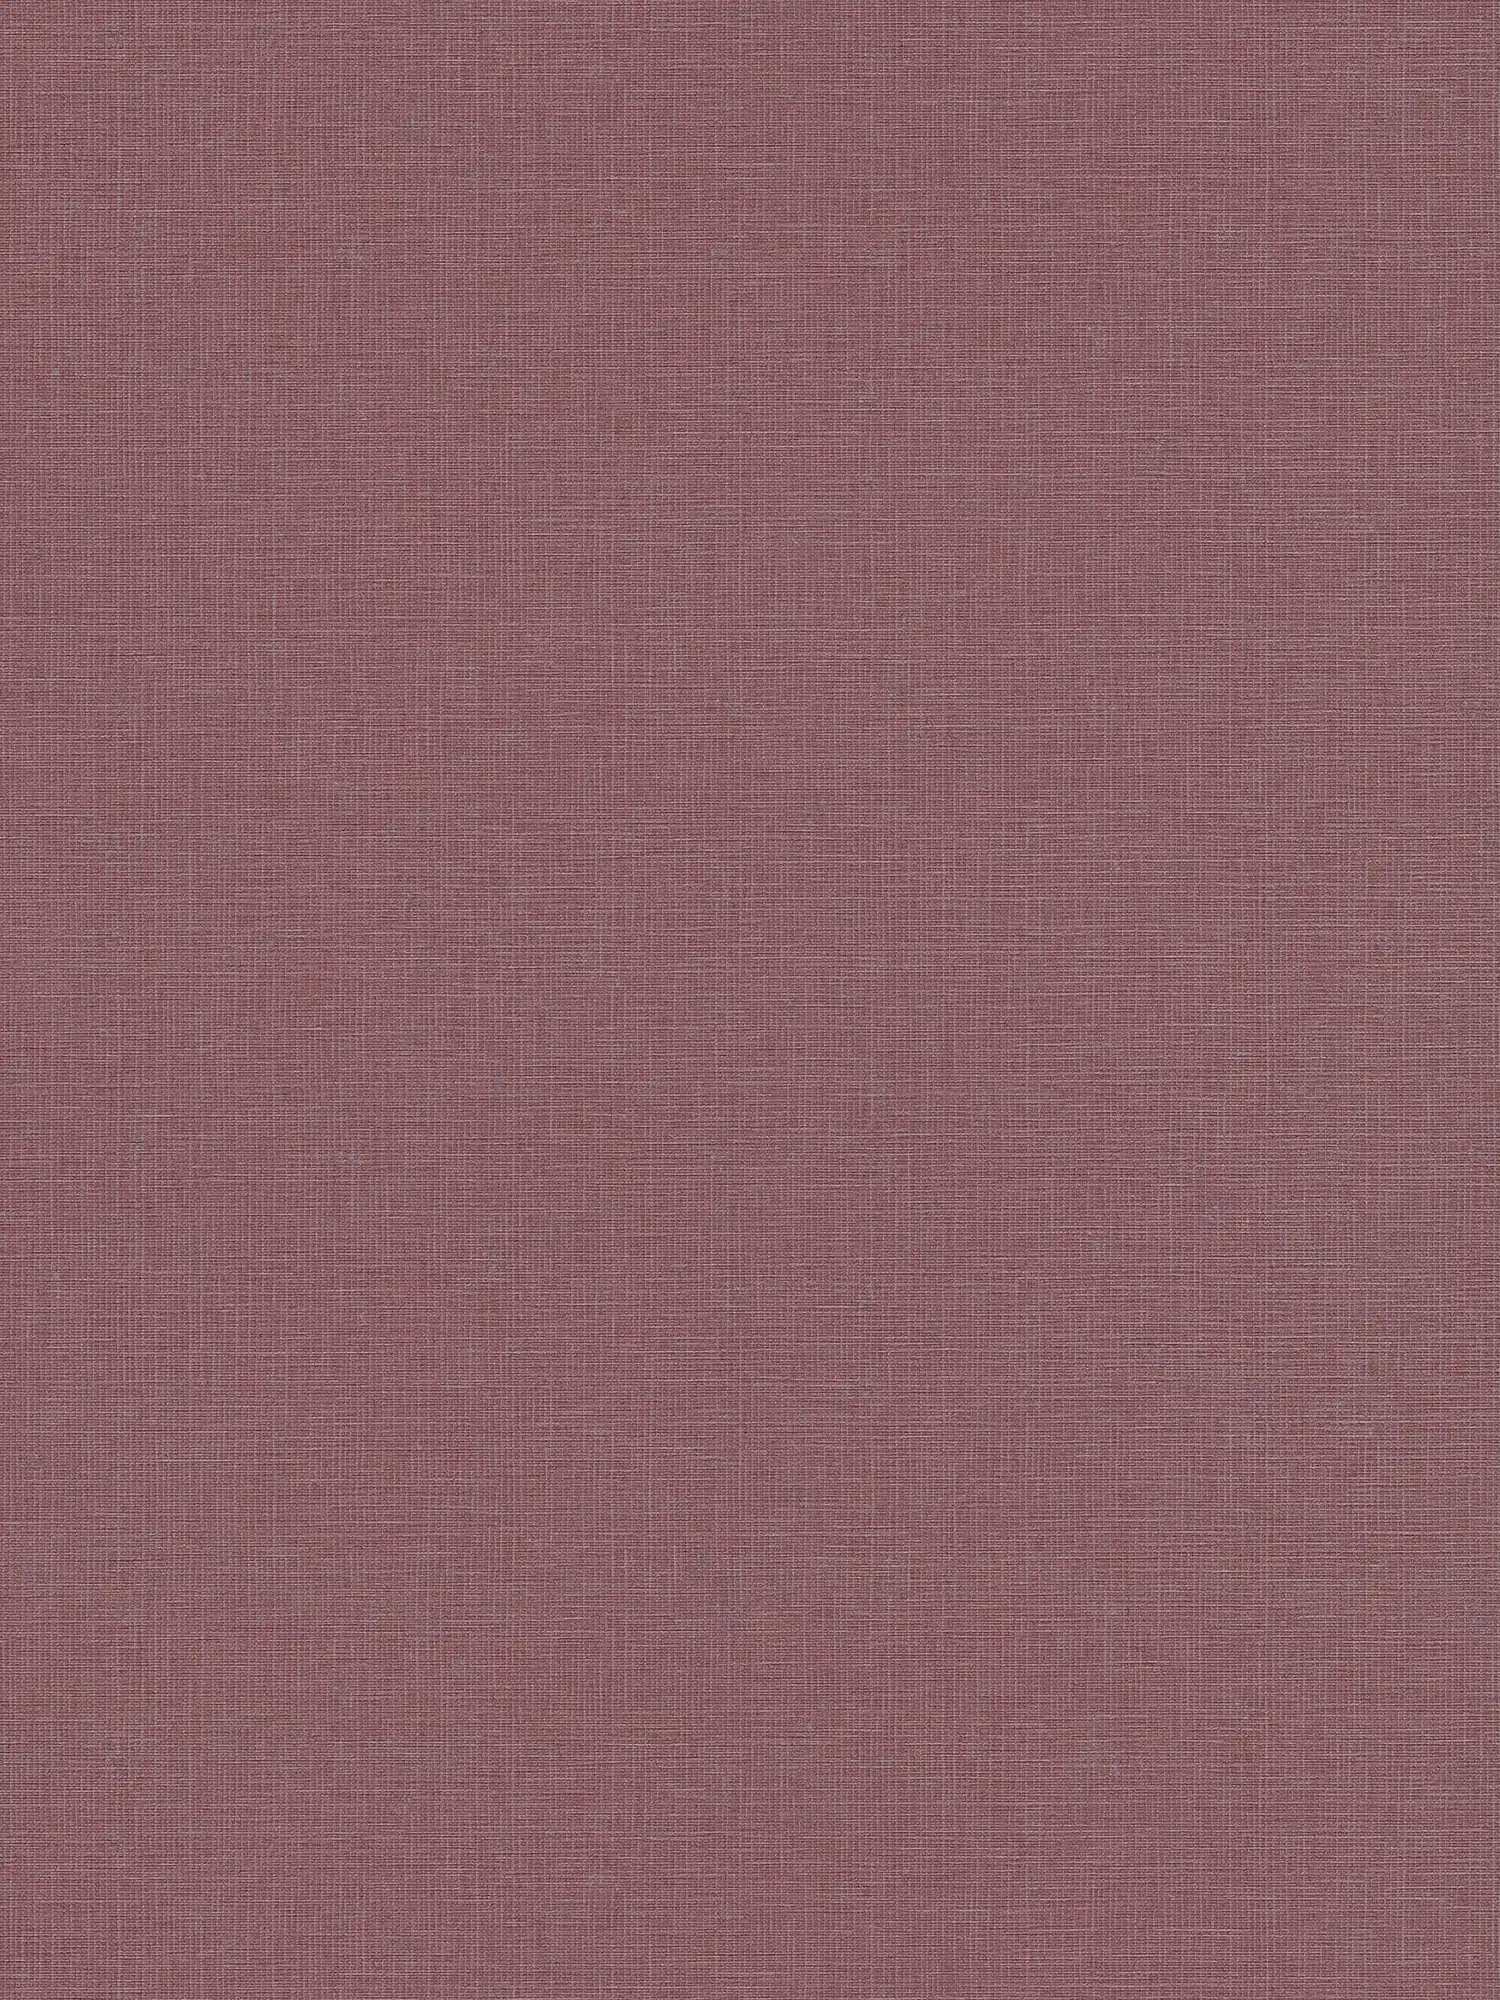 Papel pintado liso no tejido con estructura de lino - rojo
